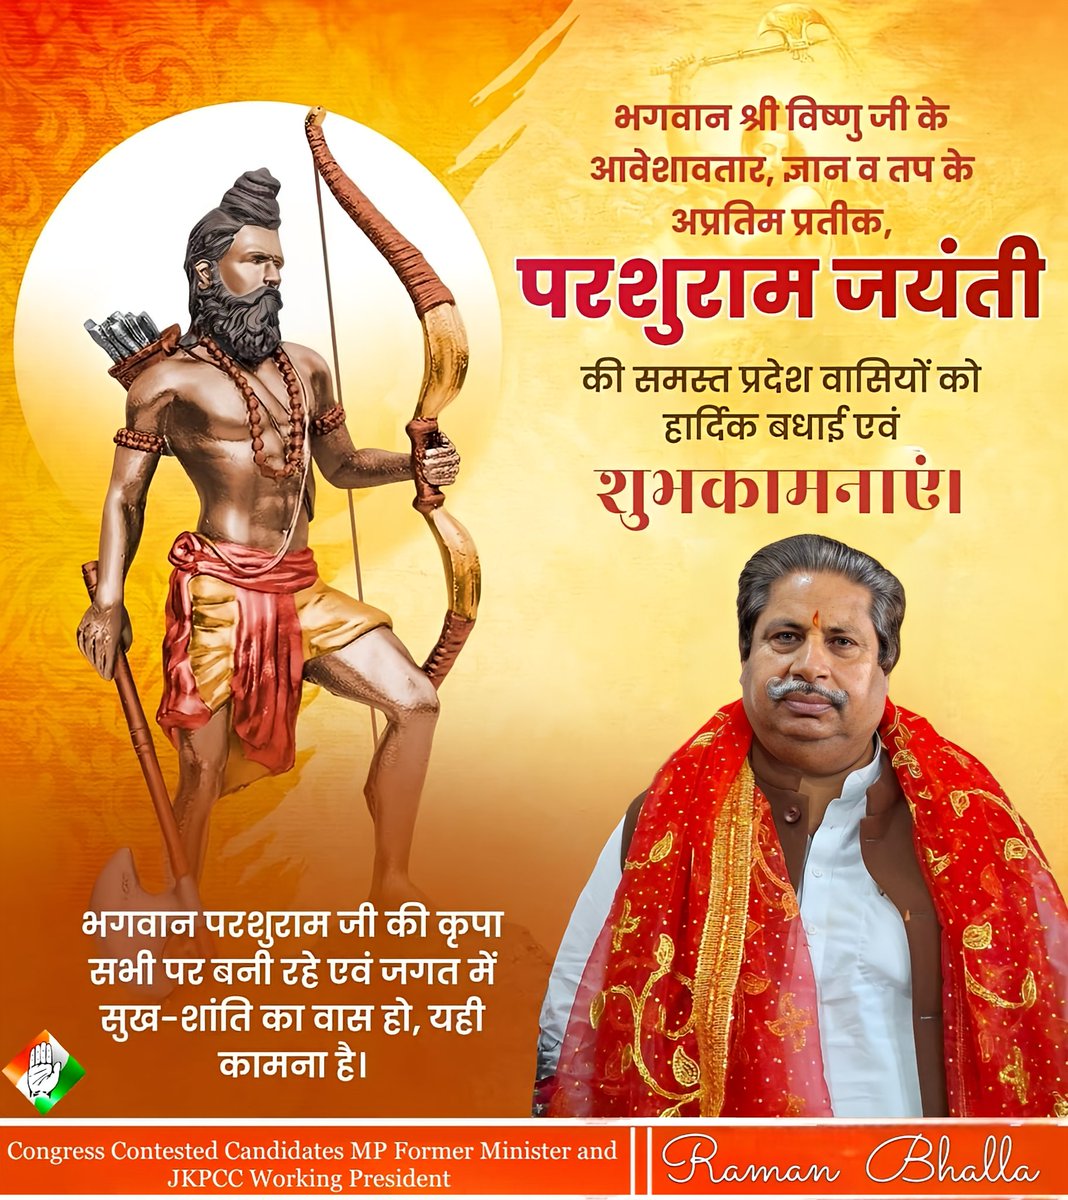 समस्त देश- प्रदेशवासियों को भगवान विष्णु के अवतार भगवान श्री परशुराम जी की जयंती पर हार्दिक बधाई एवं शुभकामनाएं।